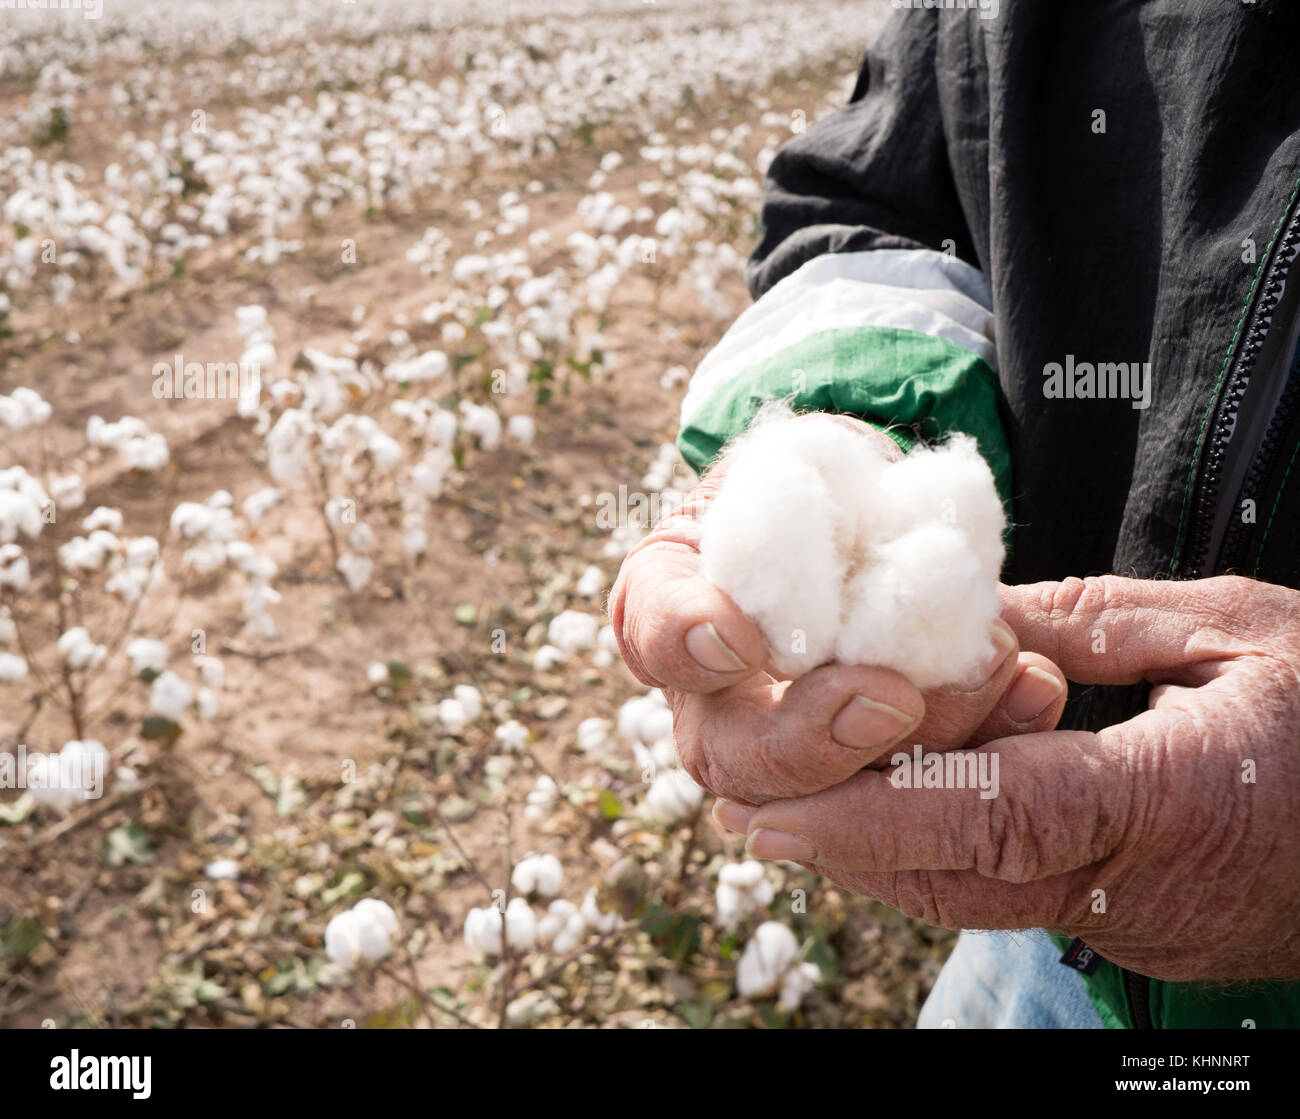 Il cotone è di essere asciutto al raccolto, qui un agricoltore controlla la presenza di umidità Foto Stock